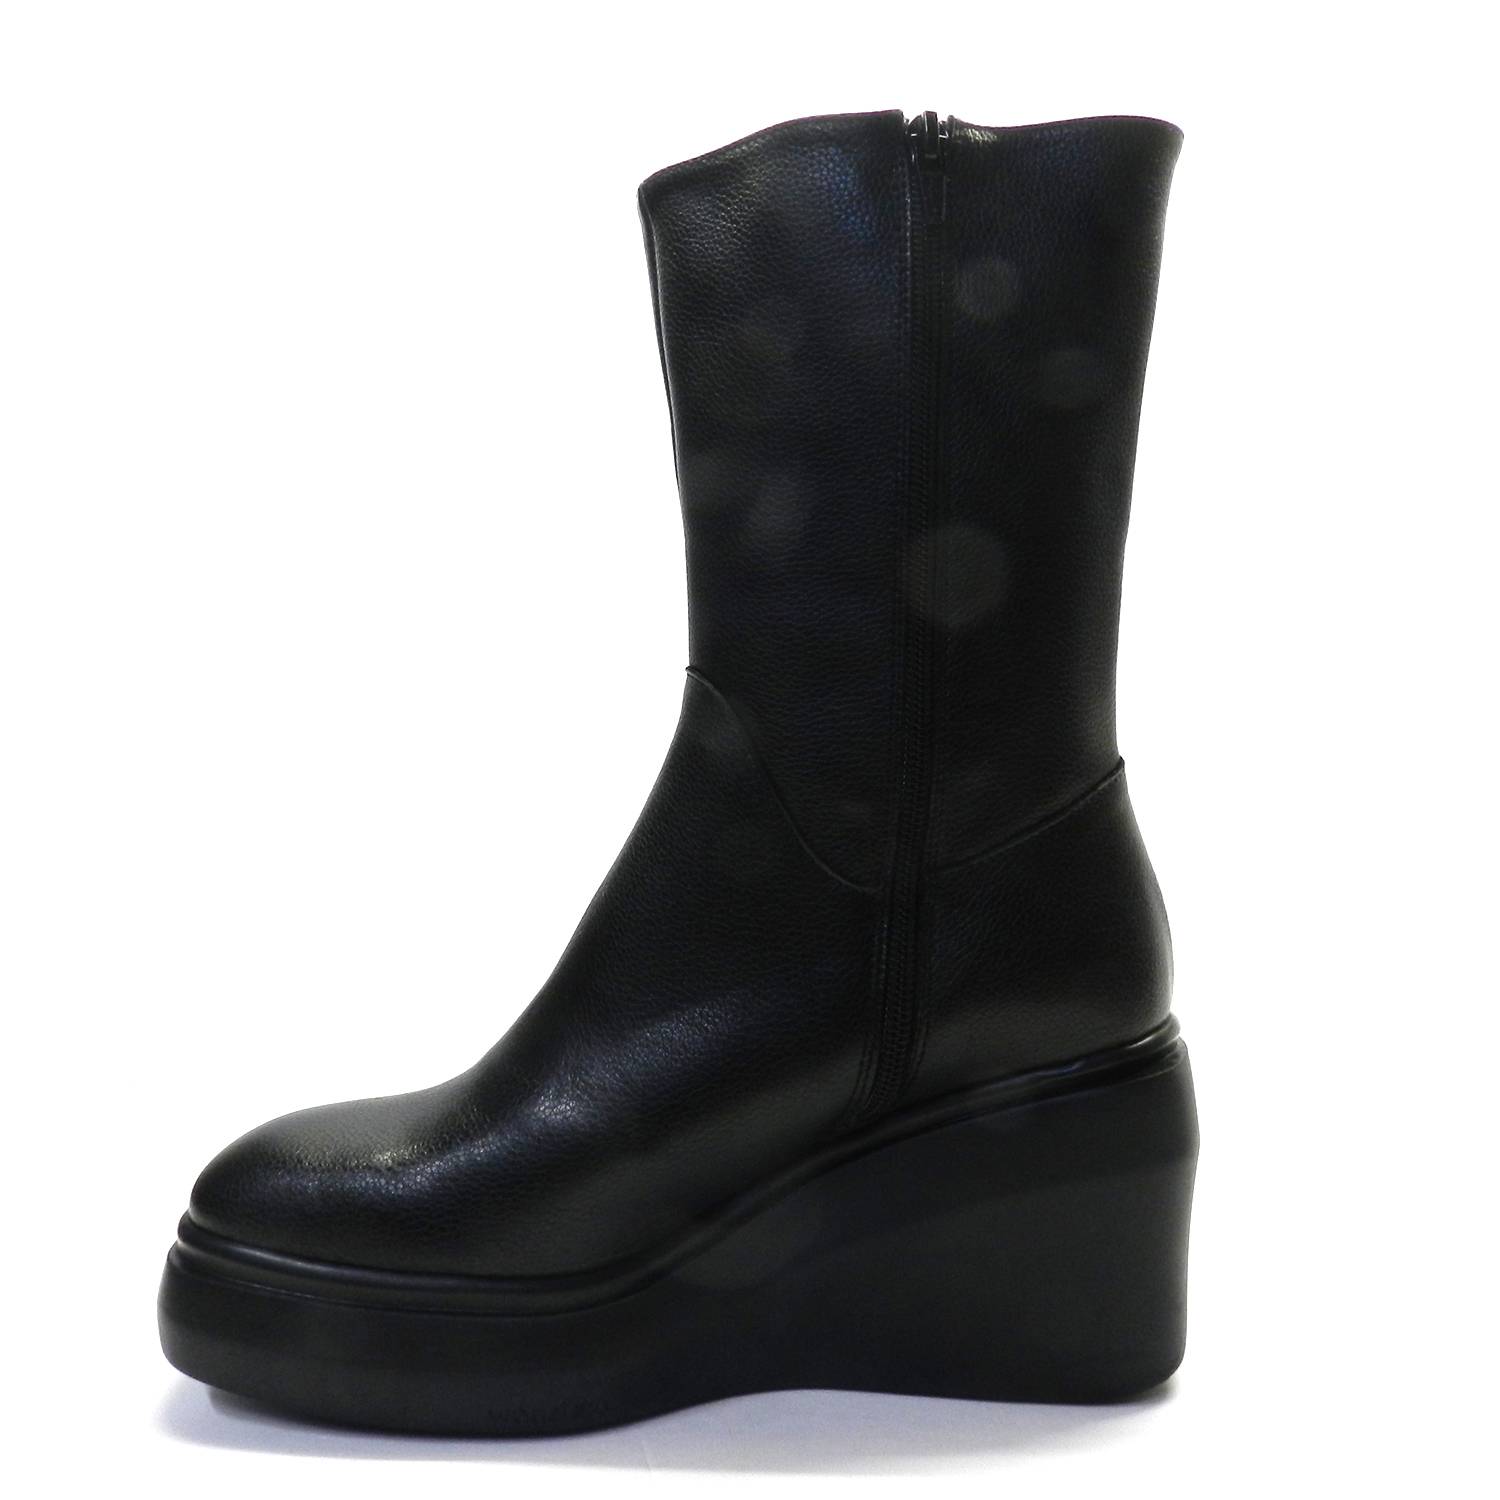 Bota de la marca Wonders modelo H5305 en color negro. Bota de caña baja en piel lisa, suela de goma con cuña.